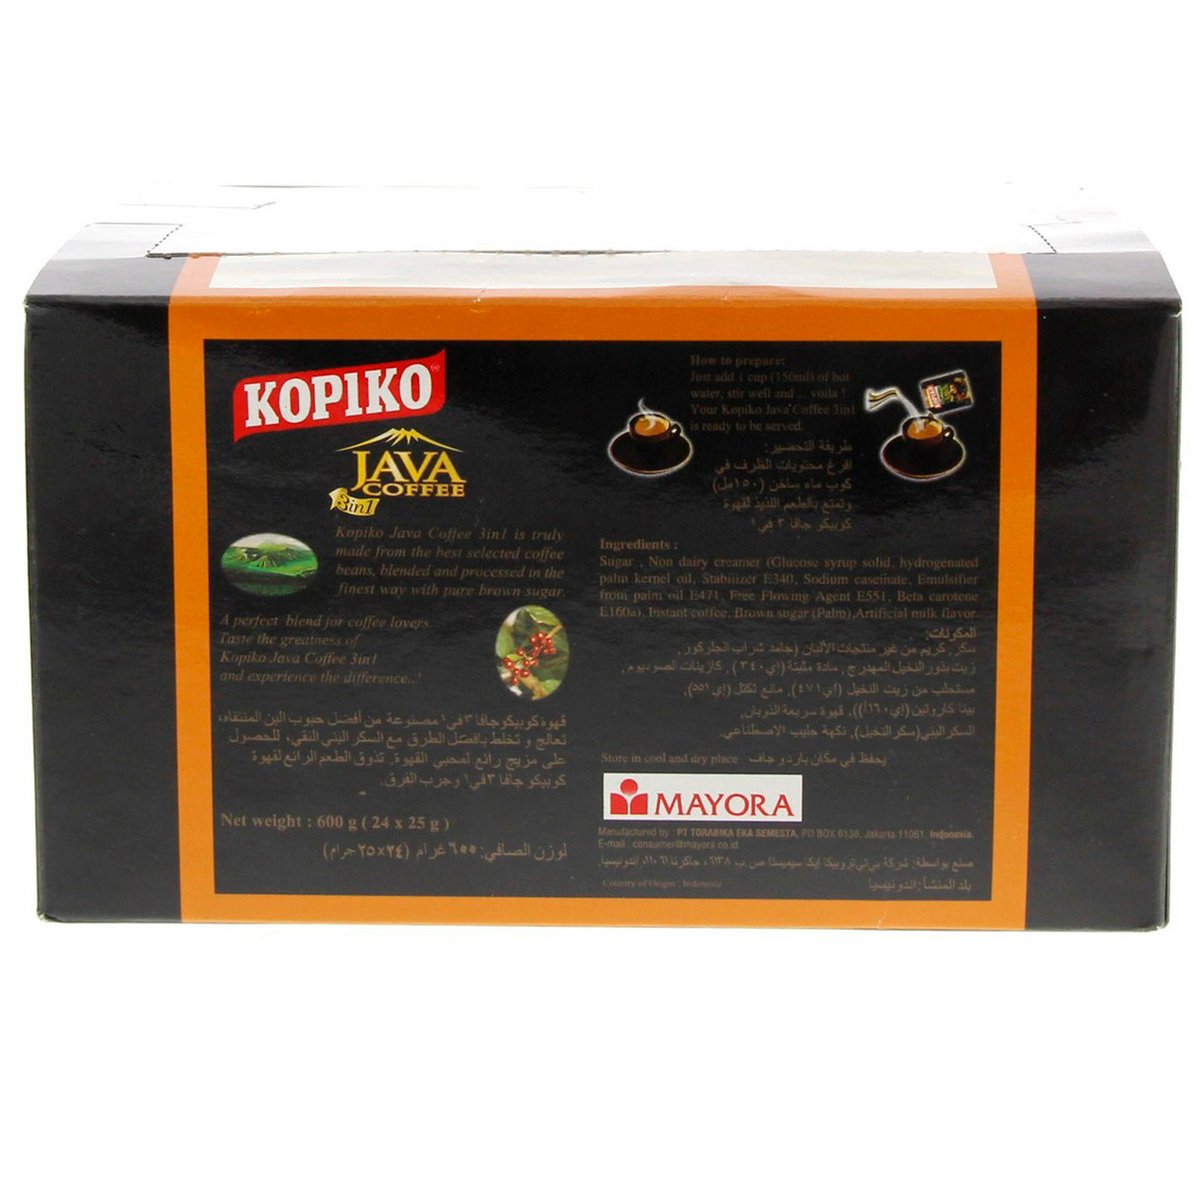 Kopiko Java Coffee 3in1 24 x 25 g